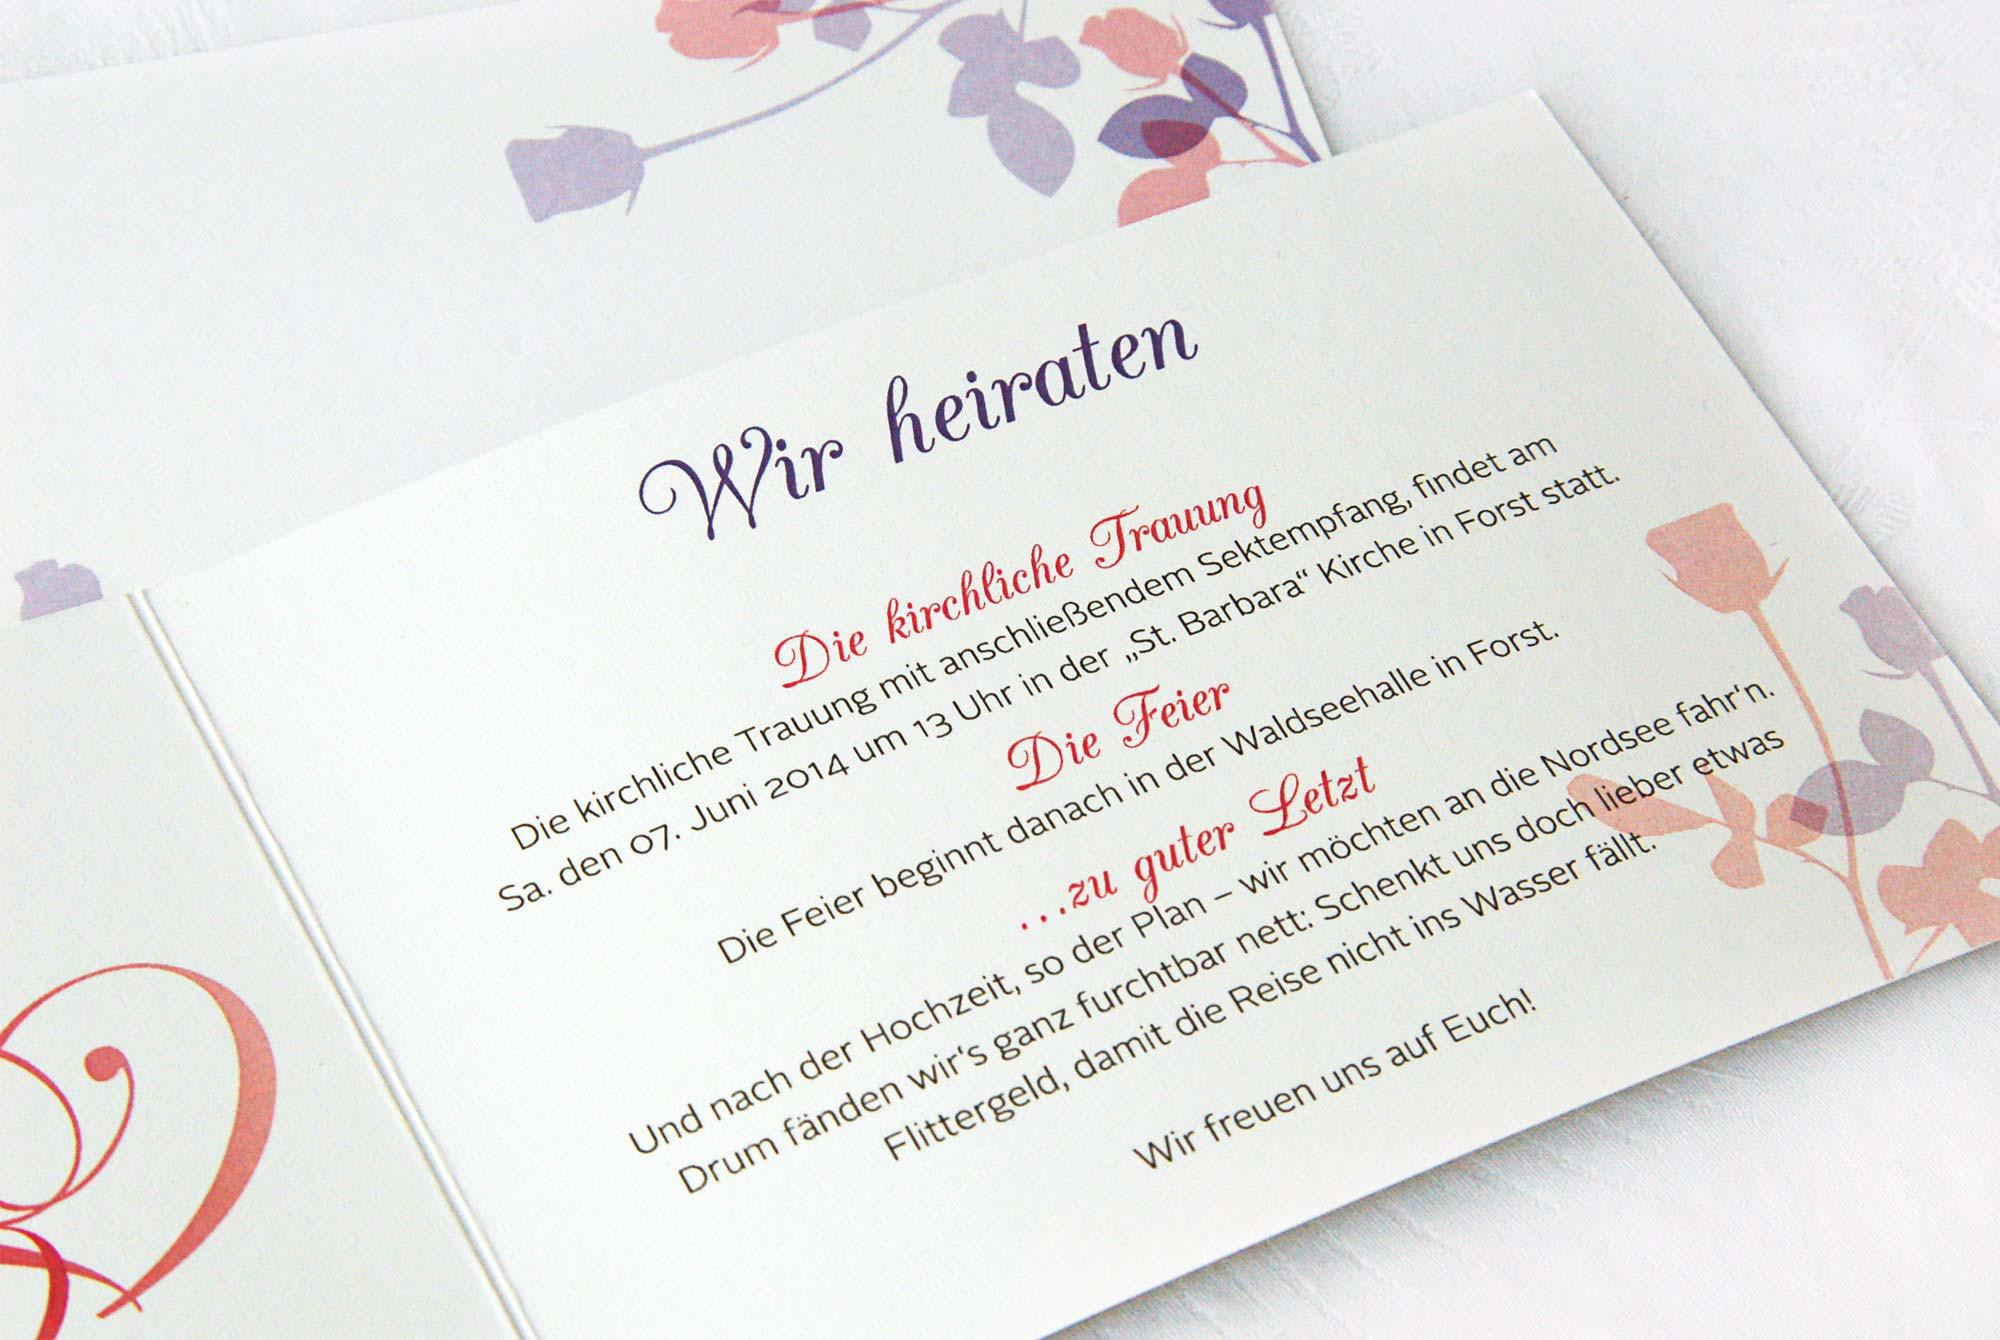 Einladungstext Hochzeit Lustig
 Einladungskarten Hochzeit Text